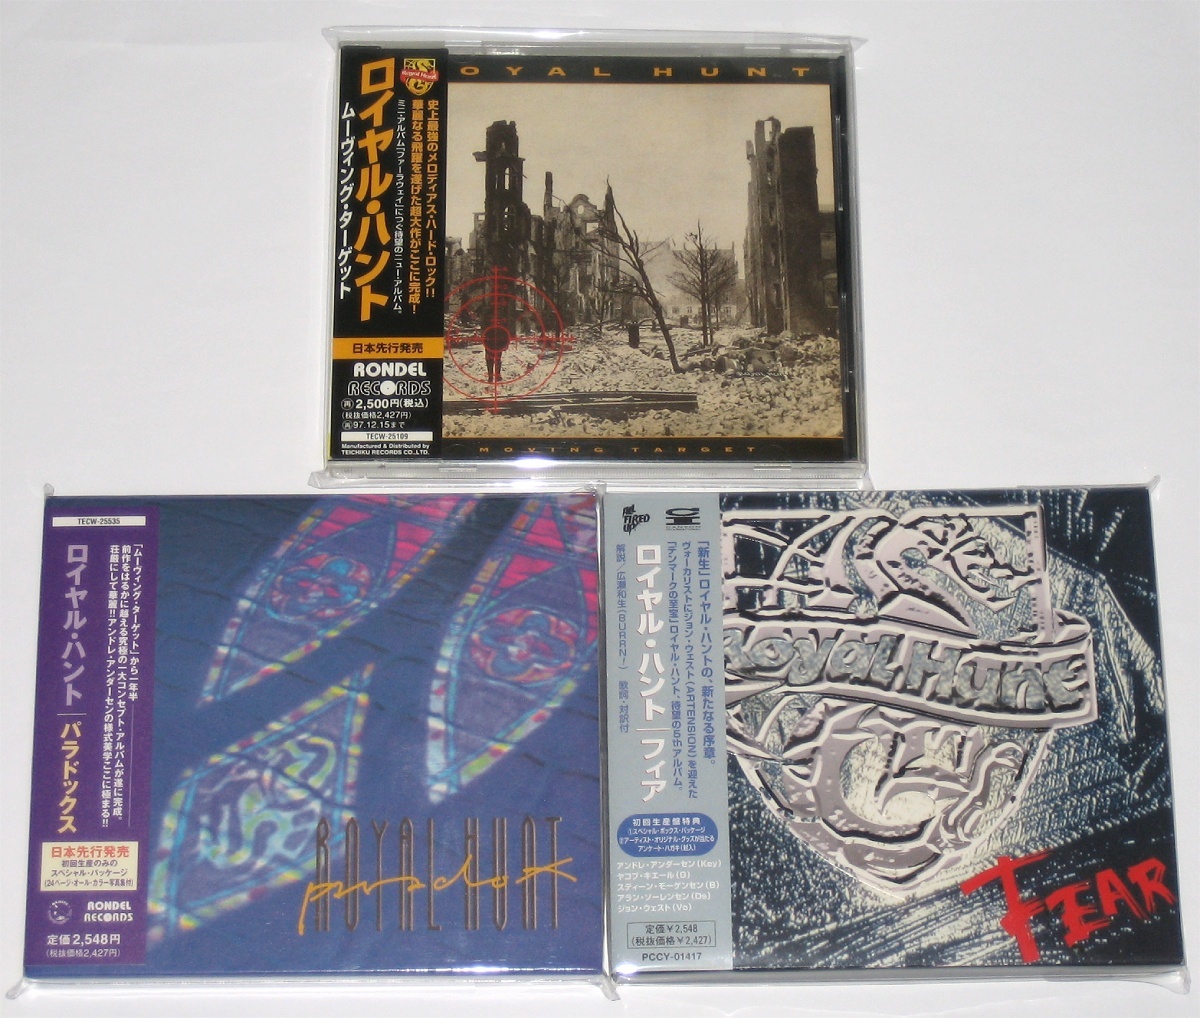 ロイヤル・ハント 初回国内盤CD 7枚セット (Royal Hunt 7 CDs, Japanese First Edition)_画像6